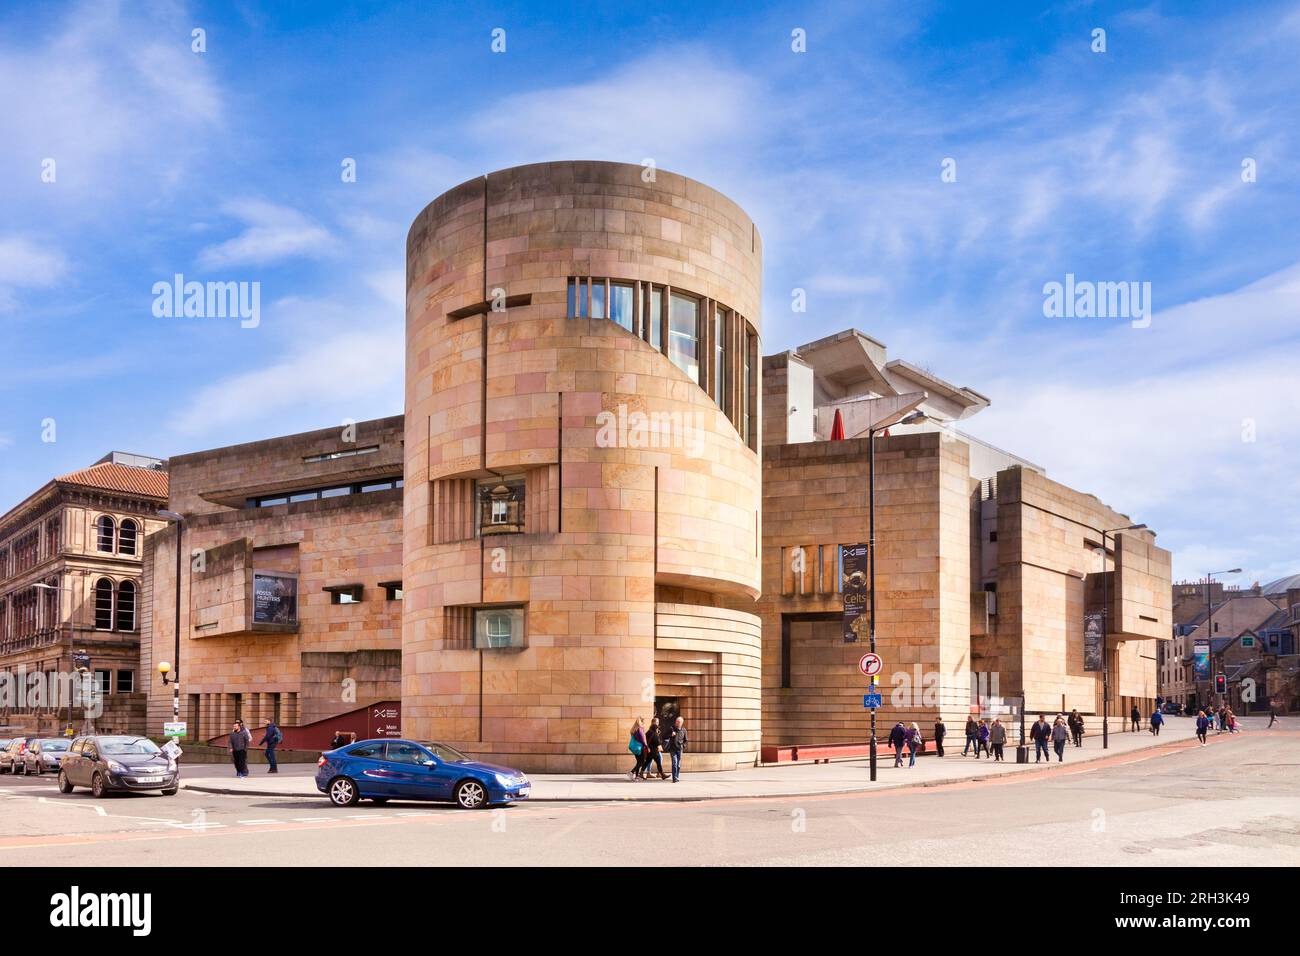 31 mars 2016 : Édimbourg, Écosse - Musée national d'Écosse, Édimbourg, Écosse, Royaume-Uni Banque D'Images